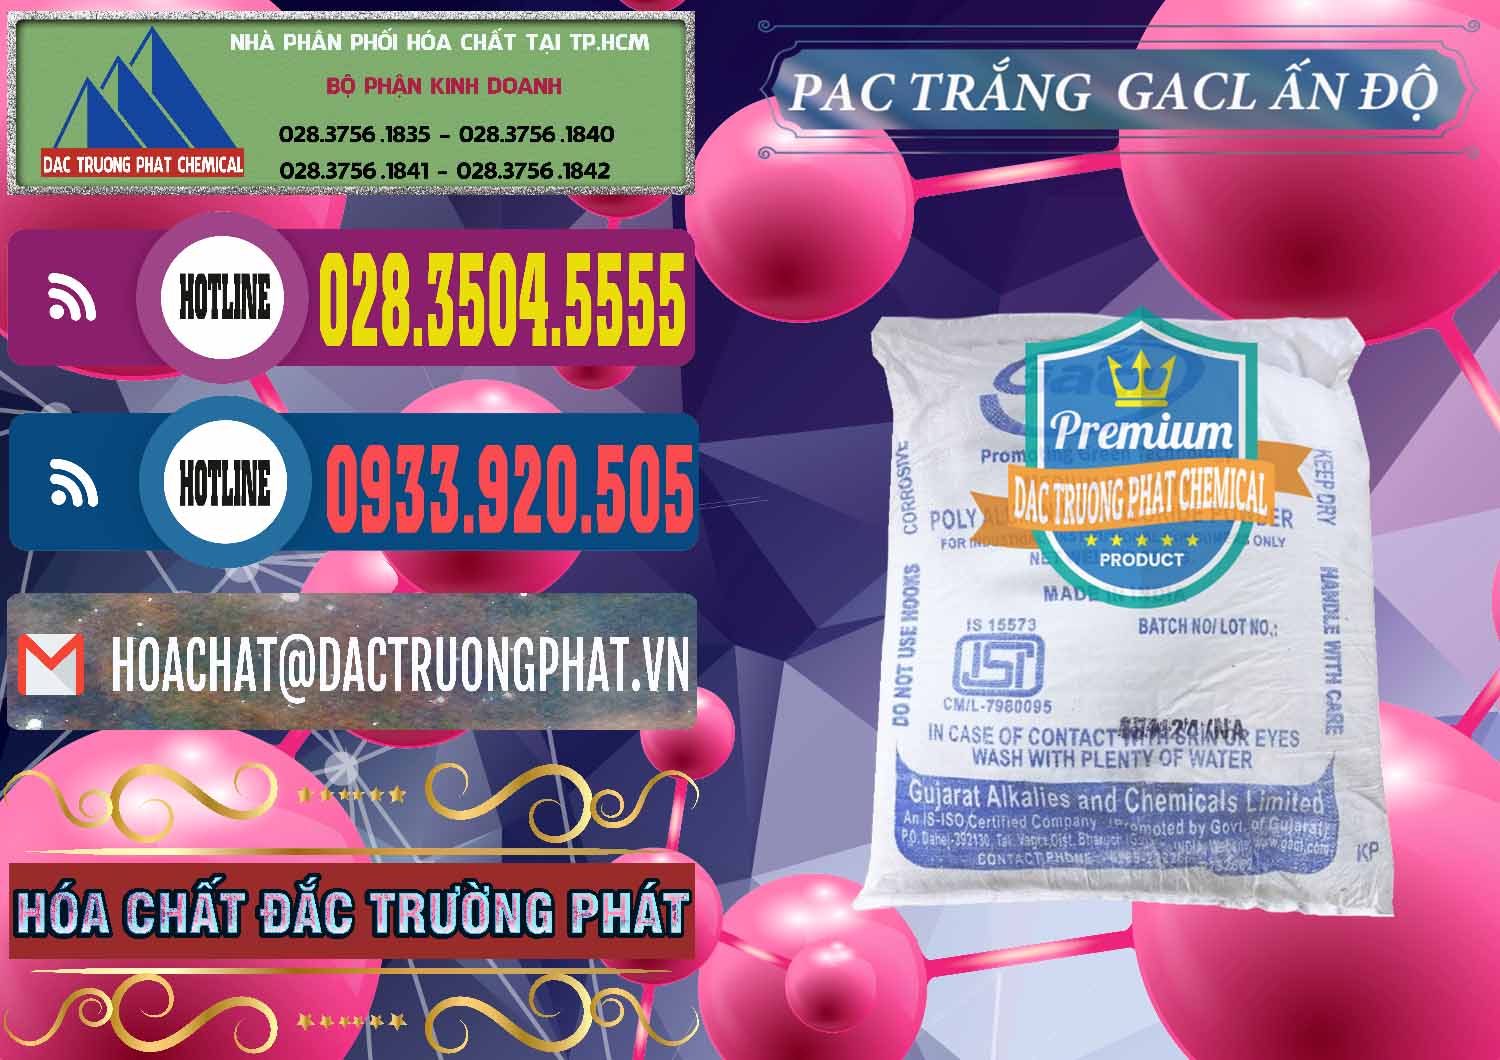 Cty chuyên bán và cung cấp PAC - Polyaluminium Chloride Trắng GACL Ấn Độ India - 0266 - Nơi chuyên cung cấp ( bán ) hóa chất tại TP.HCM - muabanhoachat.com.vn